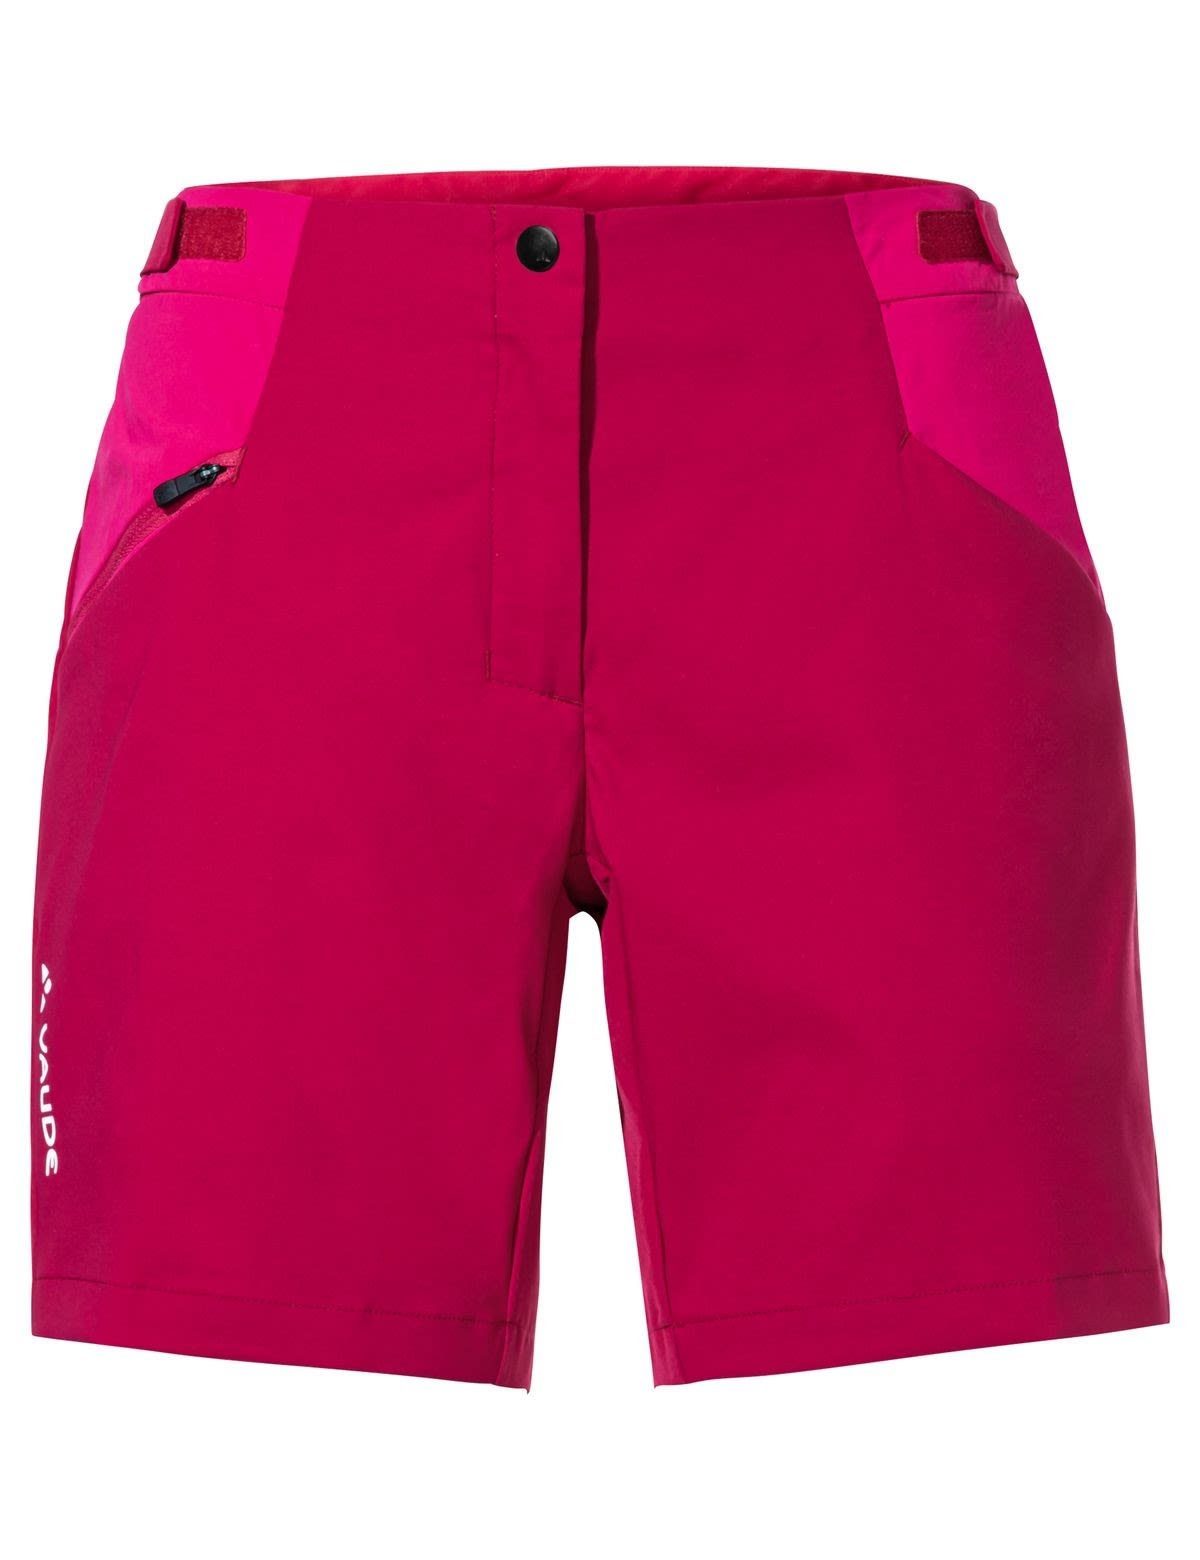 VAUDE Strandshorts Vaude Womens Iii Damen Crimson Red Shorts Tekoa Shorts